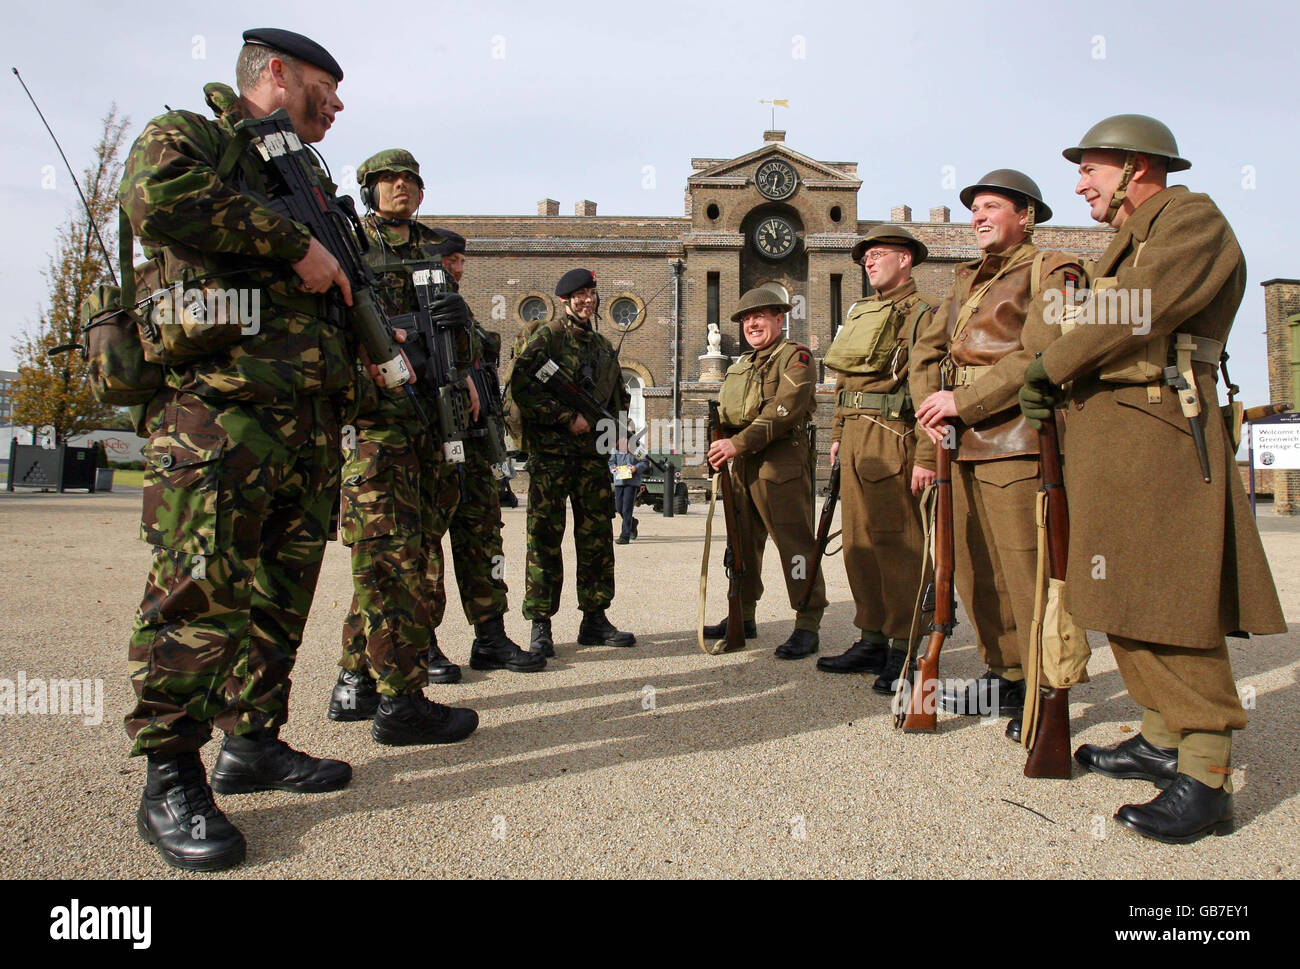 Des soldats de la Force des cadets de l'Armée, à gauche, rencontrent des membres de la garnison, un groupe de reconstitution de la Seconde Guerre mondiale, au Royal Artillery Museum, Royal Arsenal, Woolwich, Londres, lors d'un événement célébrant les 100 ans de l'Armée territoriale : Banque D'Images